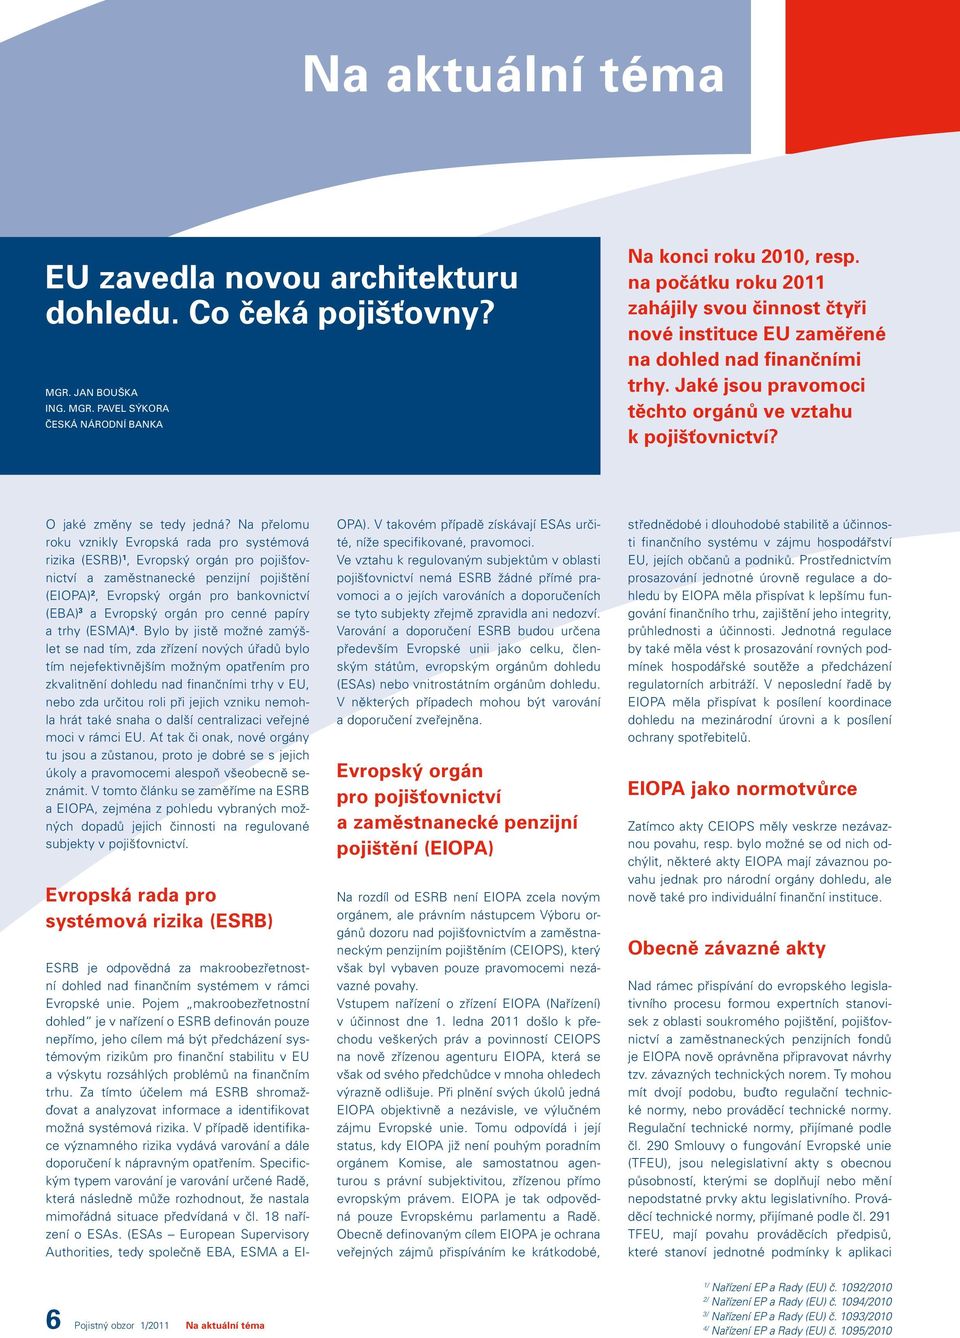 Na přelomu roku vznikly Evropská rada pro systémová rizika (ESRB) 1, Evropský orgán pro pojišťovnictví a zaměstnanecké penzijní pojištění (EIOPA) 2, Evropský orgán pro bankovnictví (EBA) 3 a Evropský